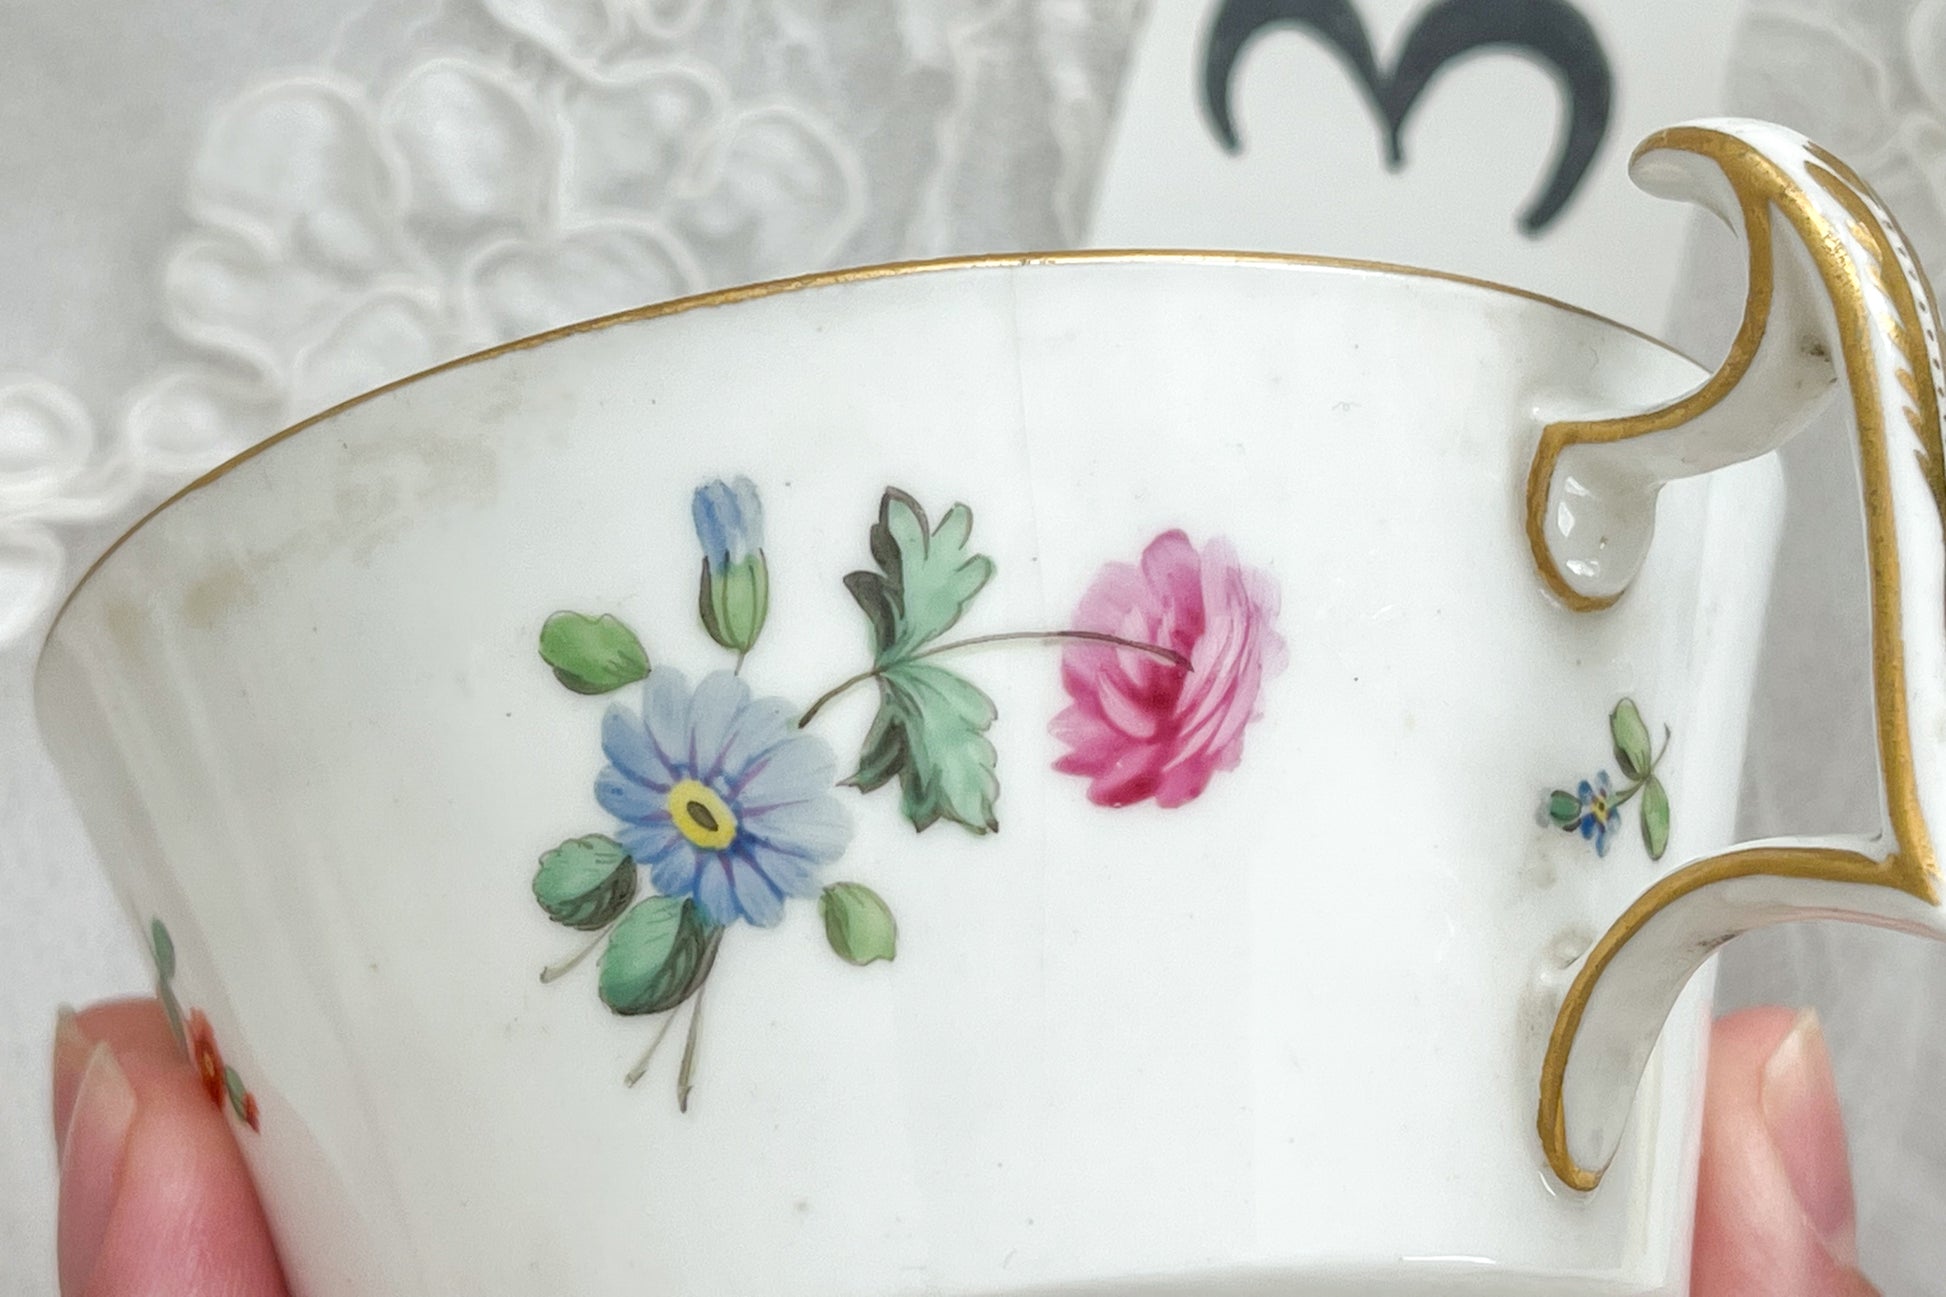 スポードは1799年にストークチャイナ（ボーンチャイナ）の製品化に成功し、英国陶磁器の礎を築いた窯。こちらは１８２０年代、約２００年ほど前に作られたロンドンシェイプと言われるとても貴重なカップ&ソーサーです。淡いブルーカラーに手描きで小さな花々が丁寧に描かれています。手描きのため、一つずつ描かれるお花も違いそれぞれに調和の取れた素晴らしいお品達です。バックには手描きでSPODEと美しい文字で記されています。カトラリー傷は当時貴族のティータイムで活躍していた証でもあります。大切に受け継がれてきたお品を受け継いでくださる方へ。